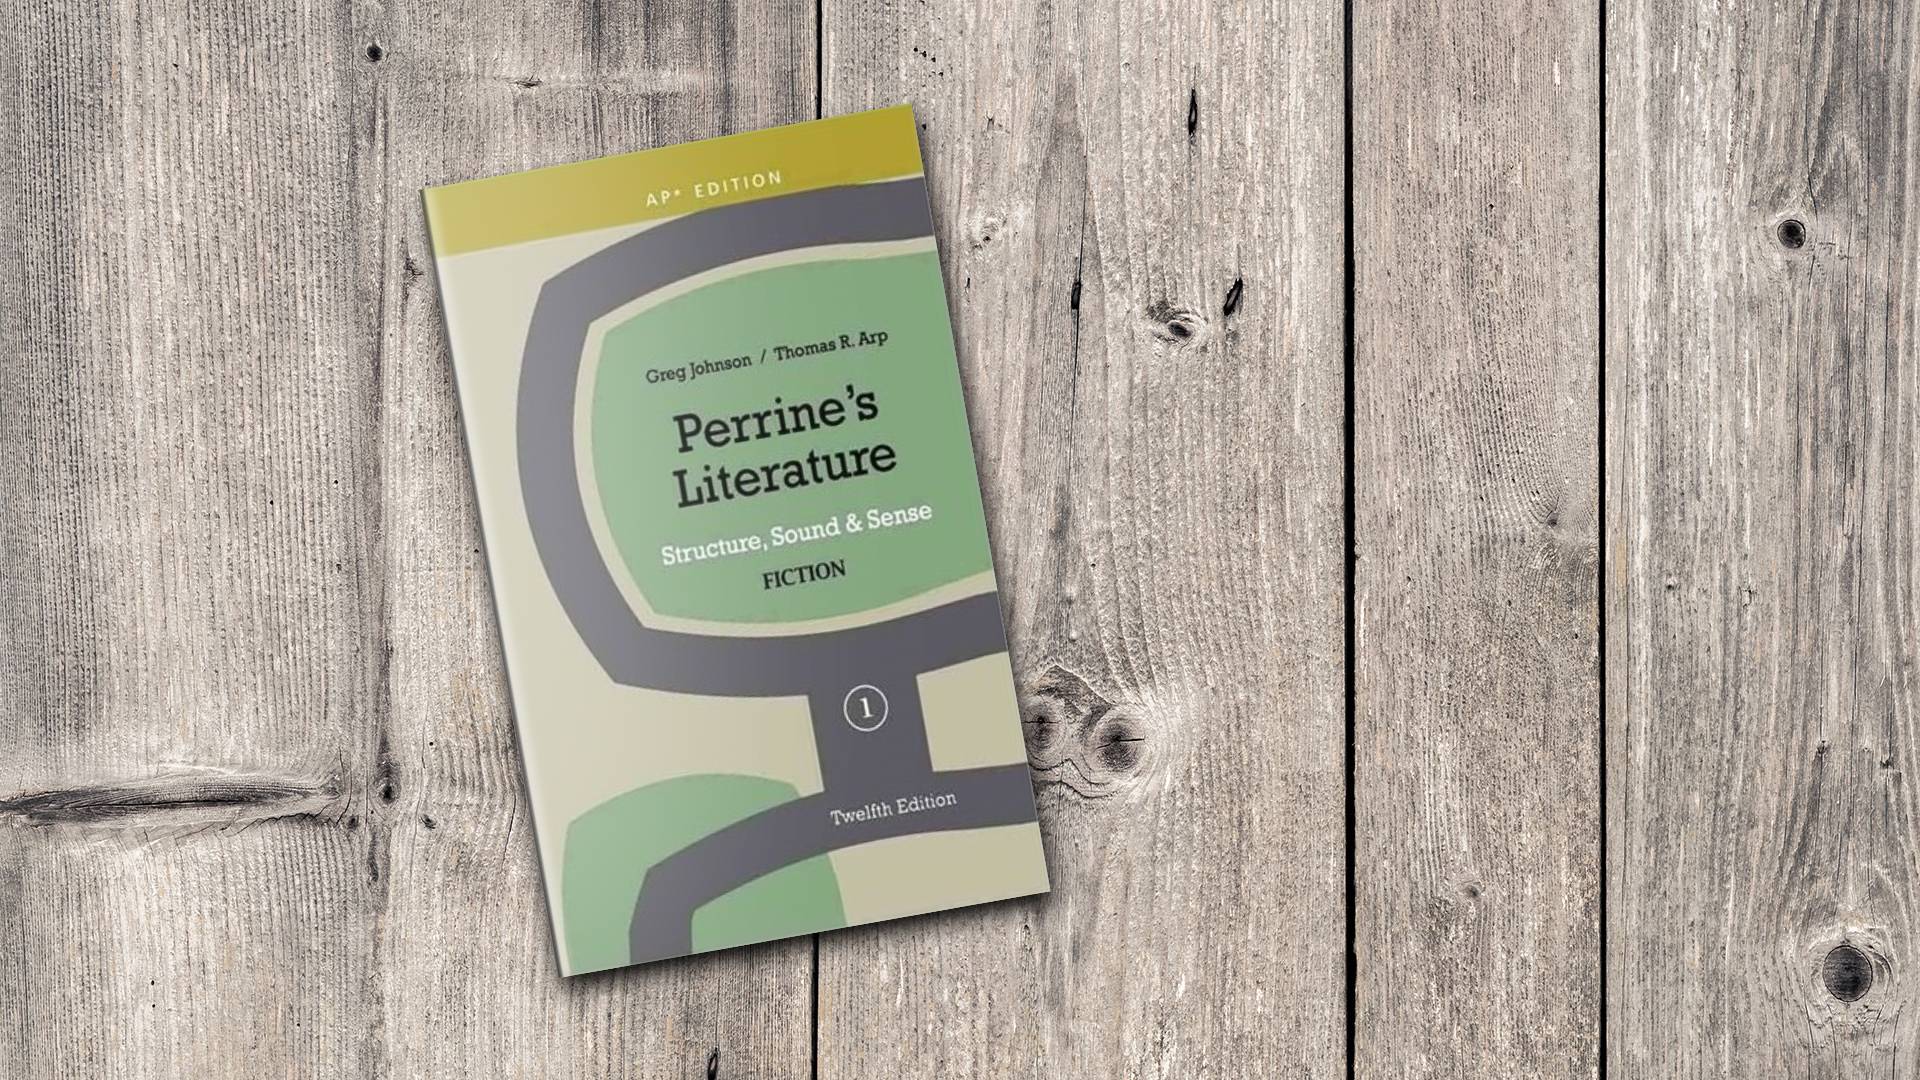 خرید کتاب زبان ادبیات دانشگاهی | فروشگاه اینترنتی کتاب زبان | Perrines Literature Structure Sound & Sense Fiction 1 Twelfth Edition | پرینز لیتریچر یک ویرایش دوازدهم